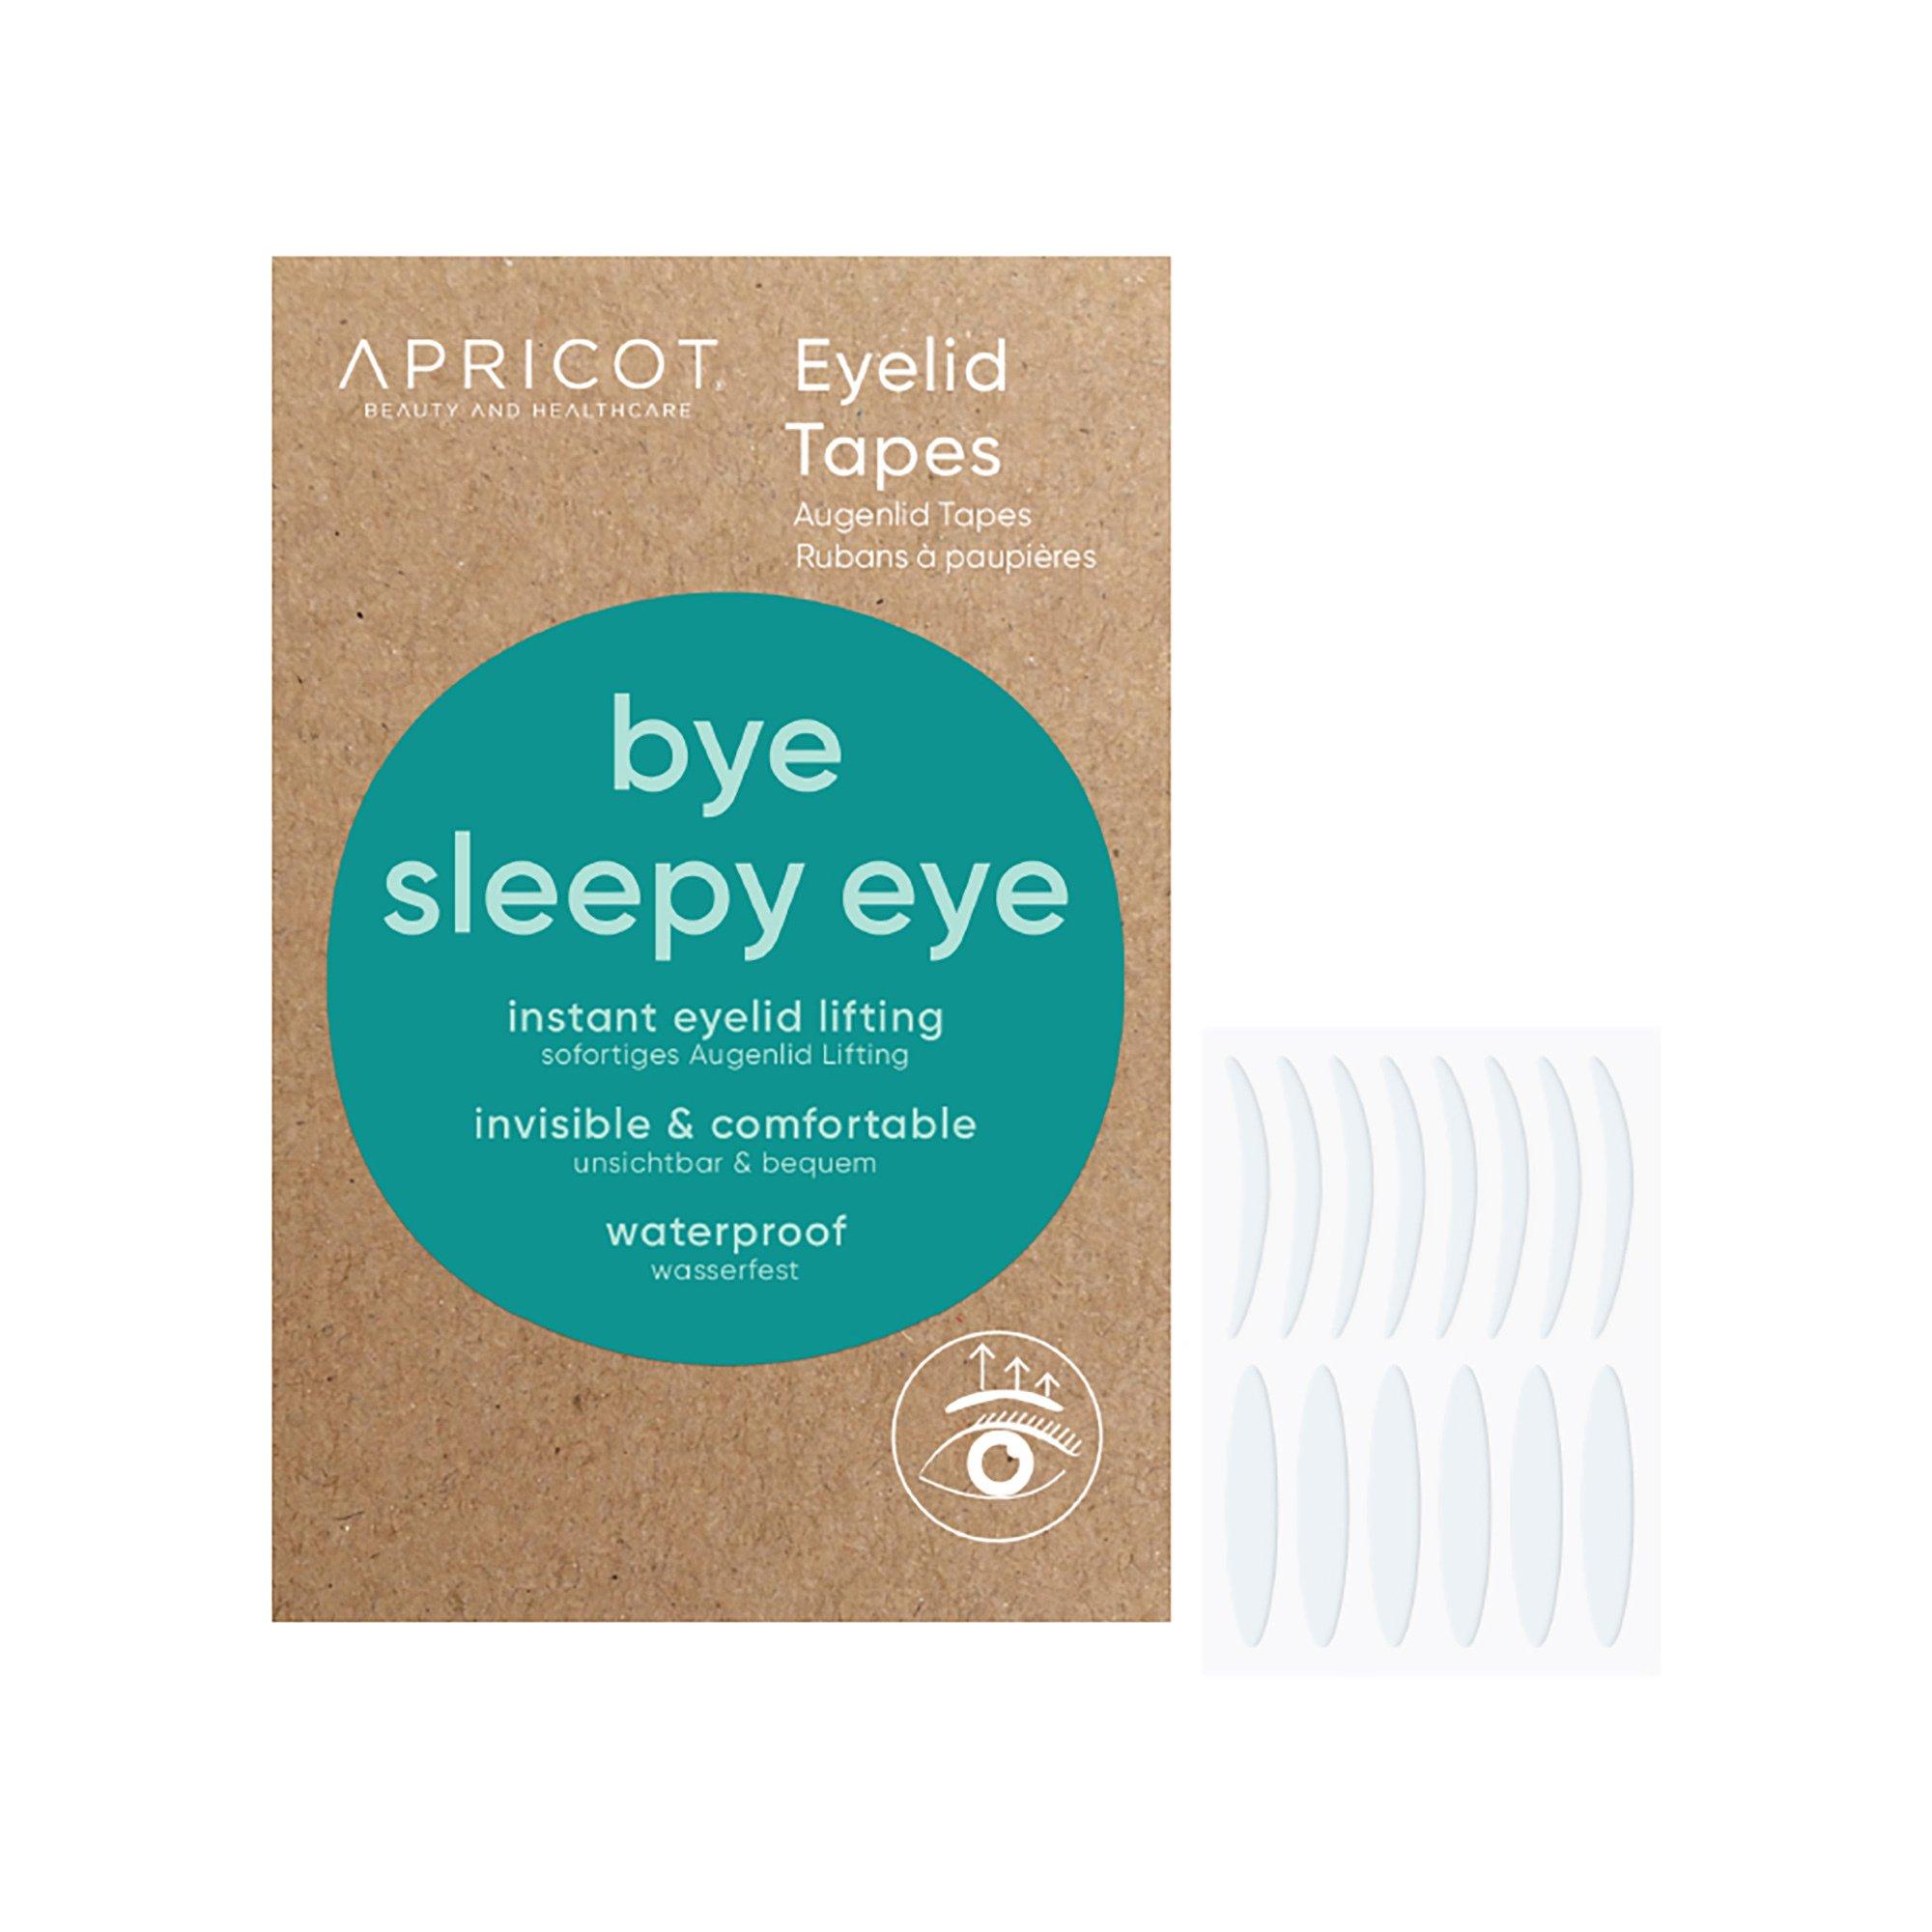 Image of APRICOT Eyelid Tapes - Bye Sleepy Eye - 96 Pezzi